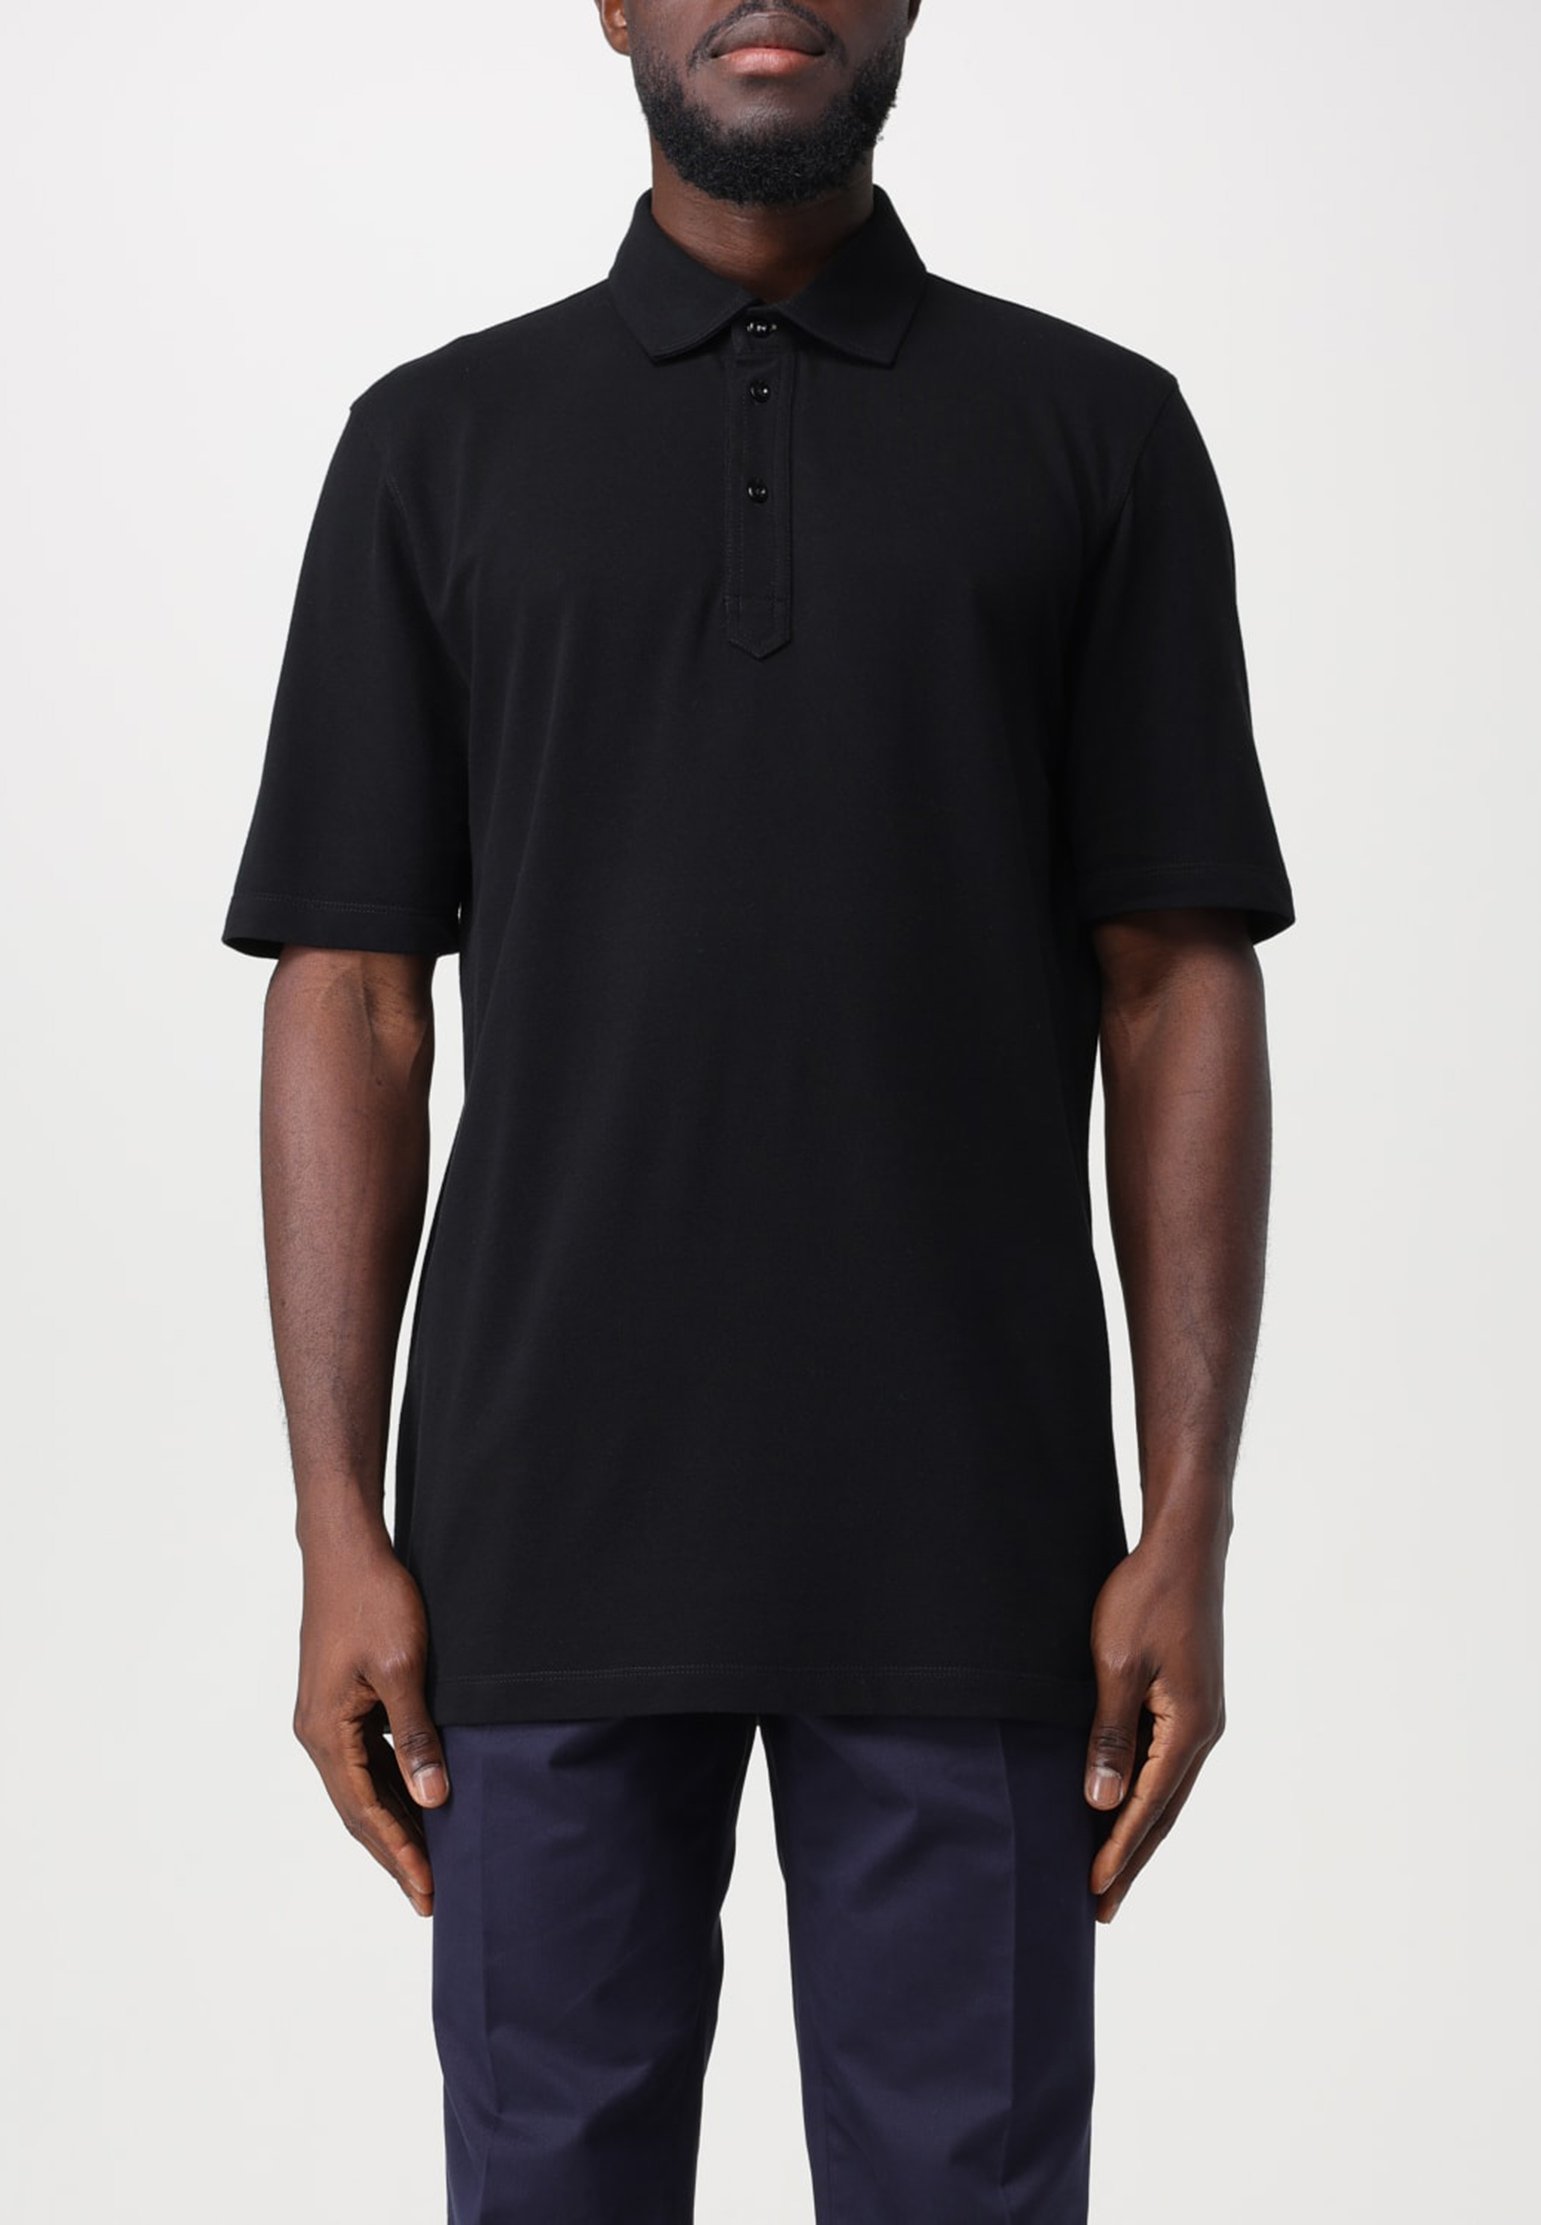 Polo BRUNELLO CUCINELLI Color: black (Code: 1185) in online store Allure